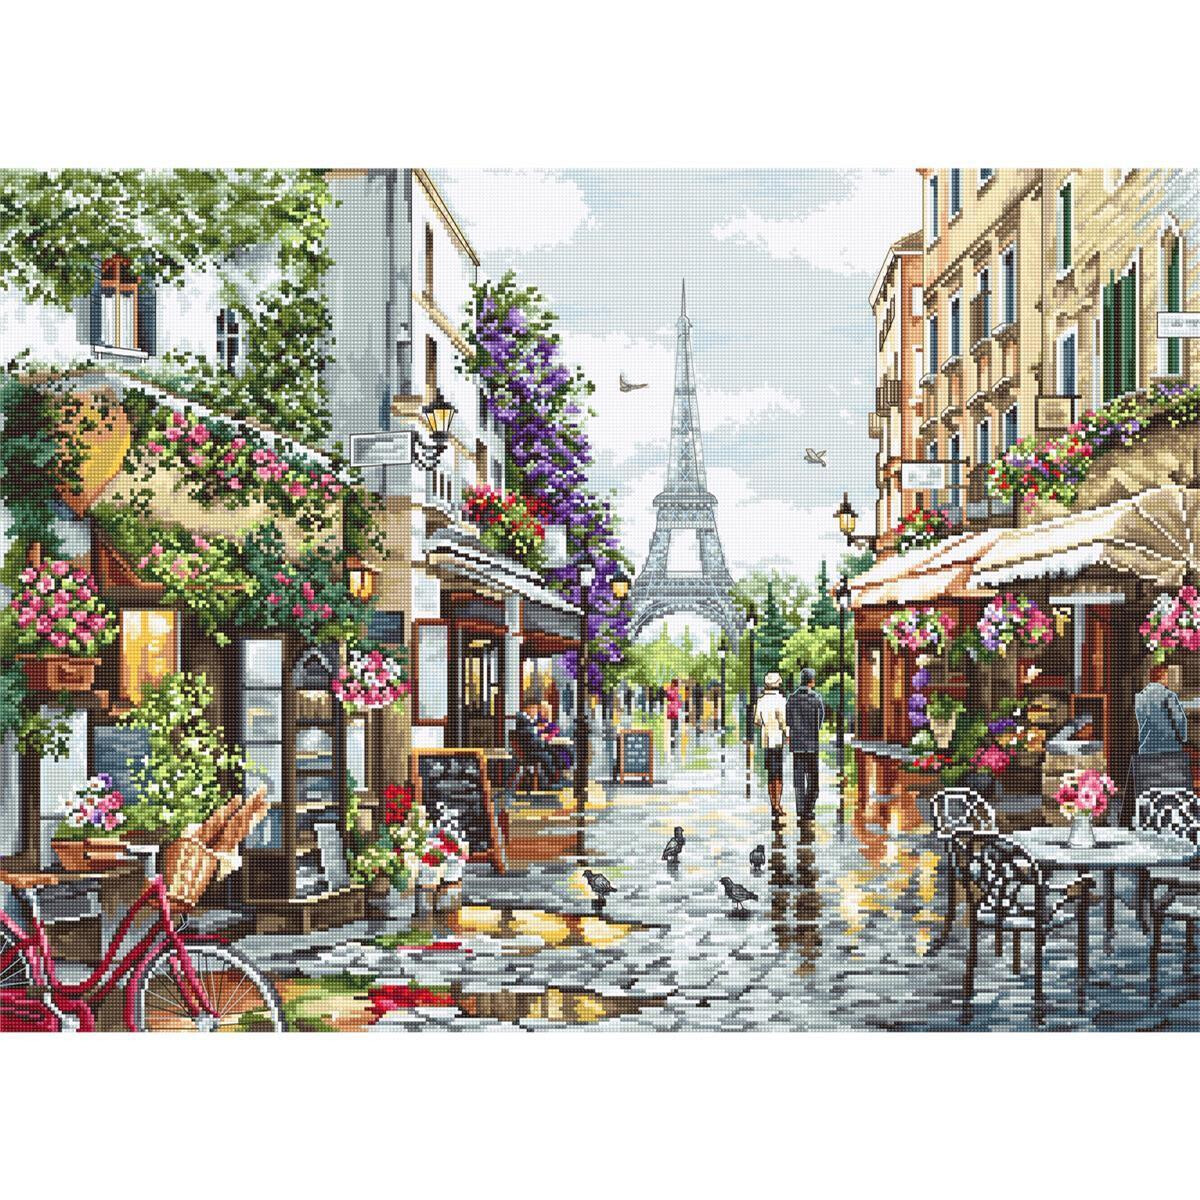 Оживленная парижская улица с кафе, магазинами и...